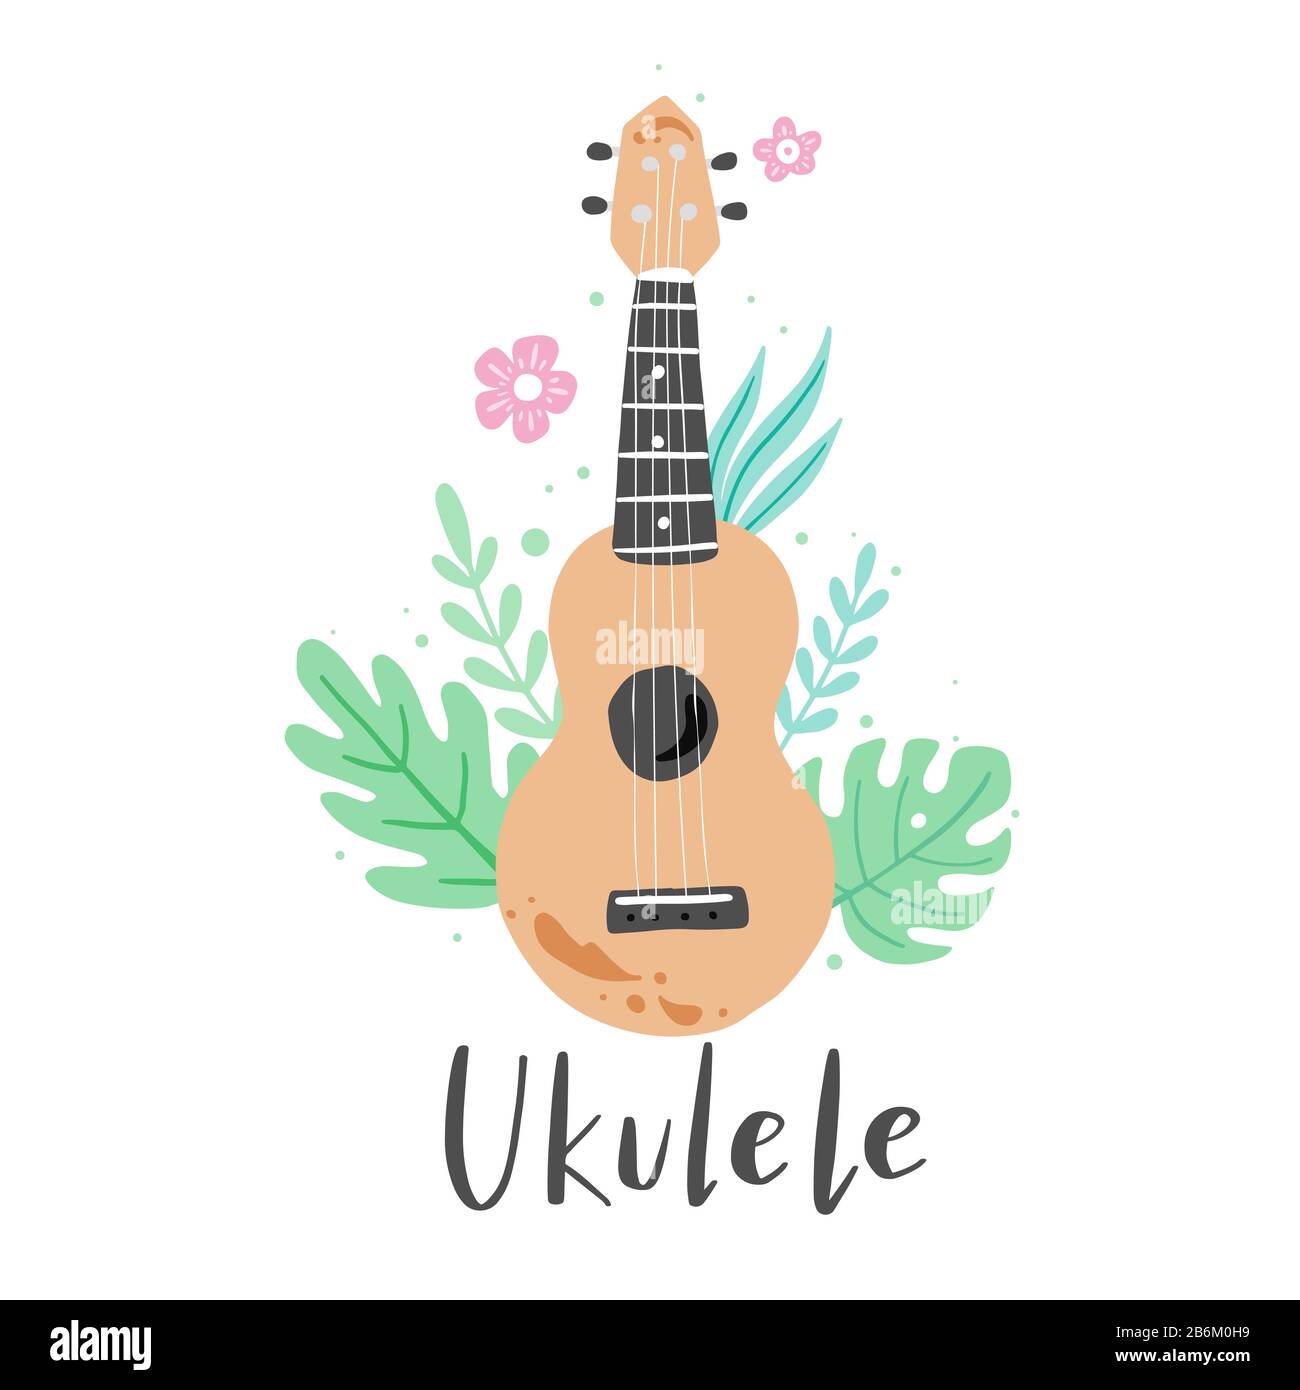 Joli ukulele de dessin animé pour affiche d'été, motif carte avec texte lettrage Ukulele. Petite guitare, instrument de musique à cordes de style hawaï. Illuataration vectorielle avec la feuille et la fleur tropicales. Illustration de Vecteur